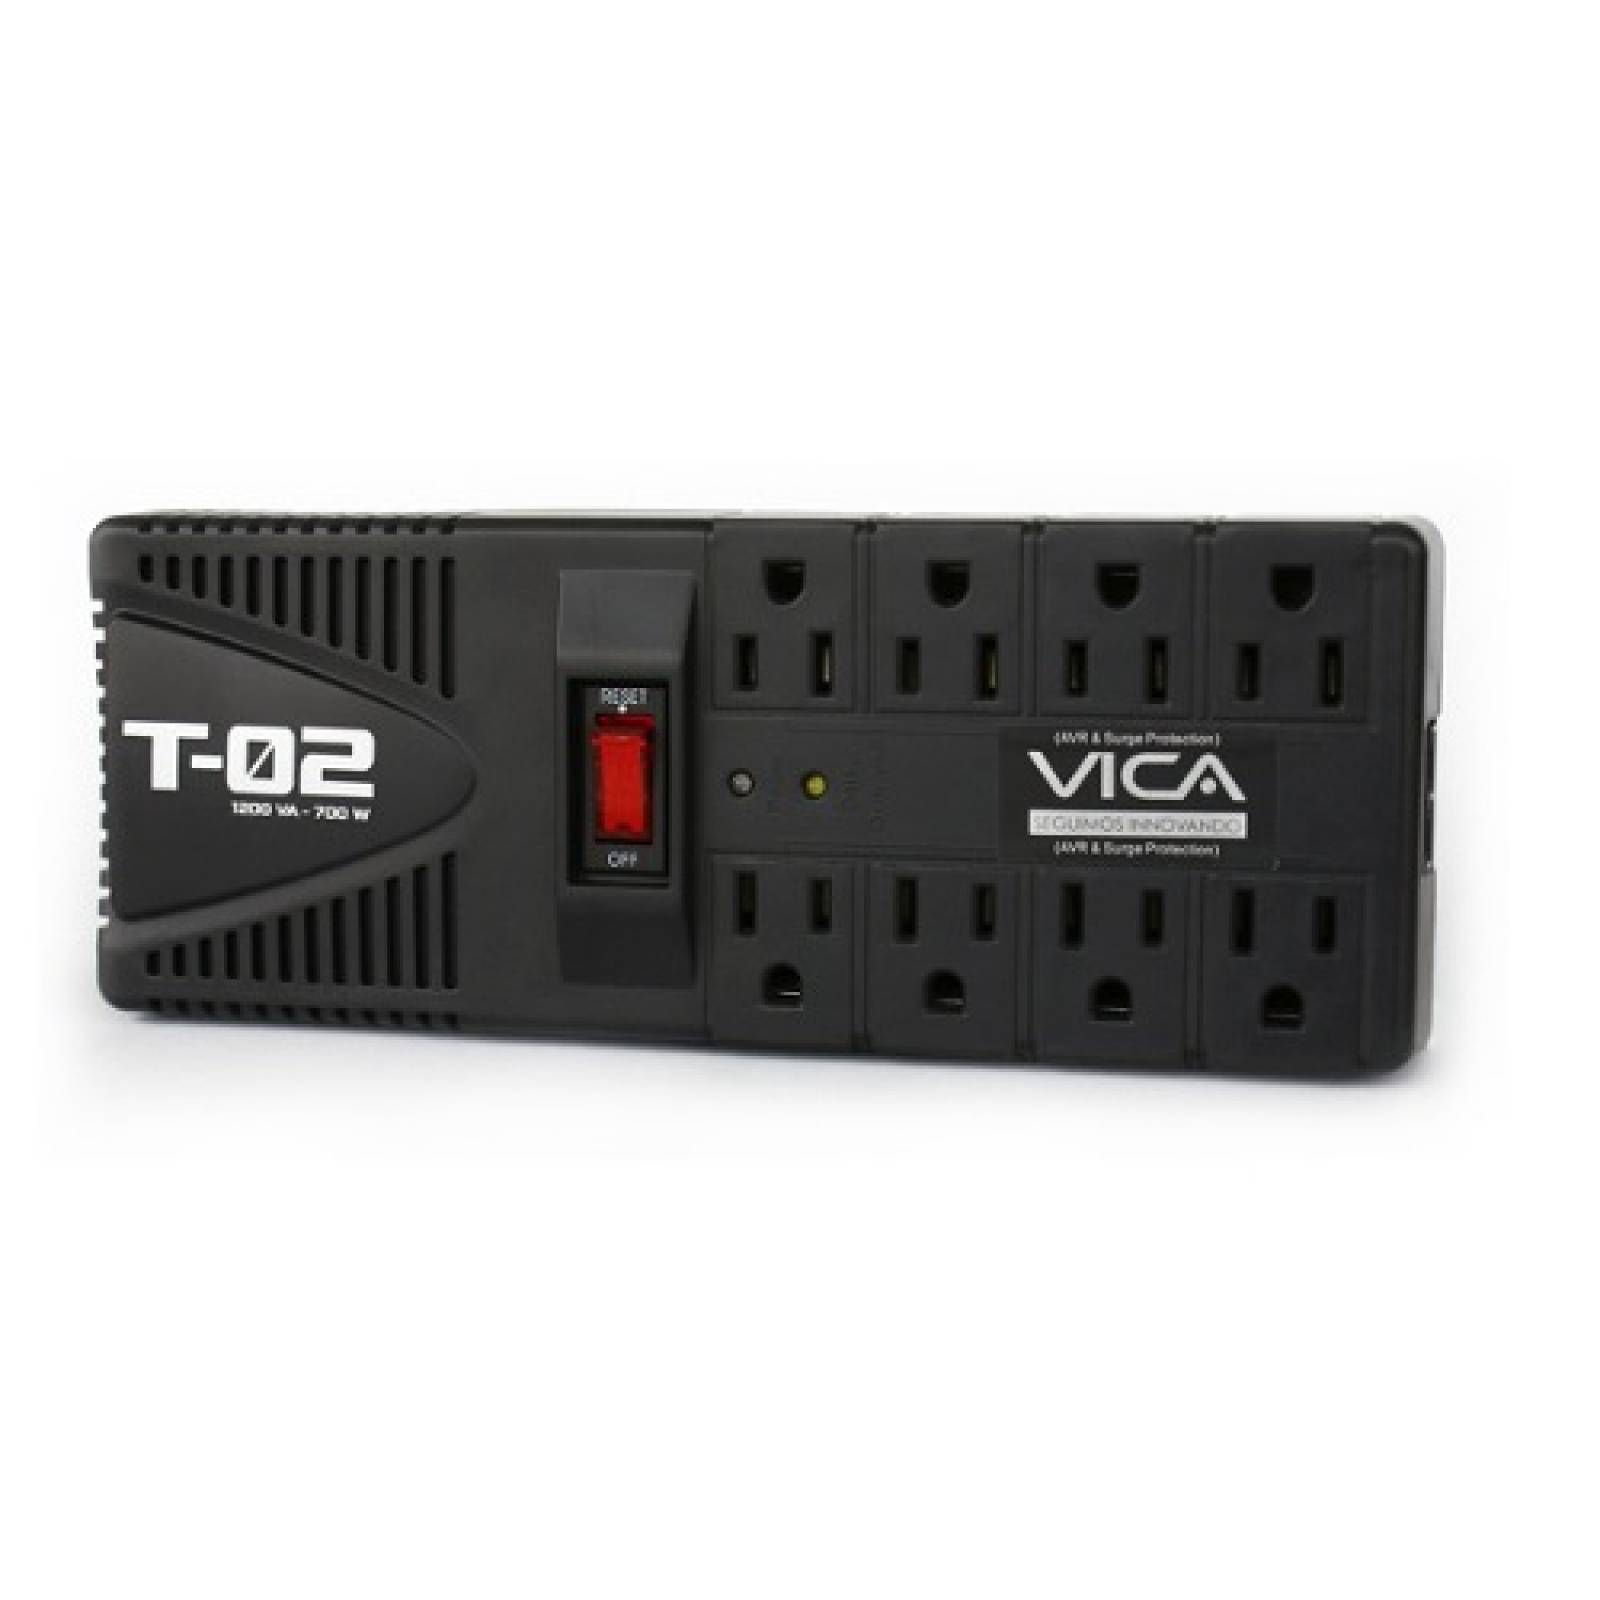 Vica Regulador Electrónico Voltaje T-02 Con Supresor Picos